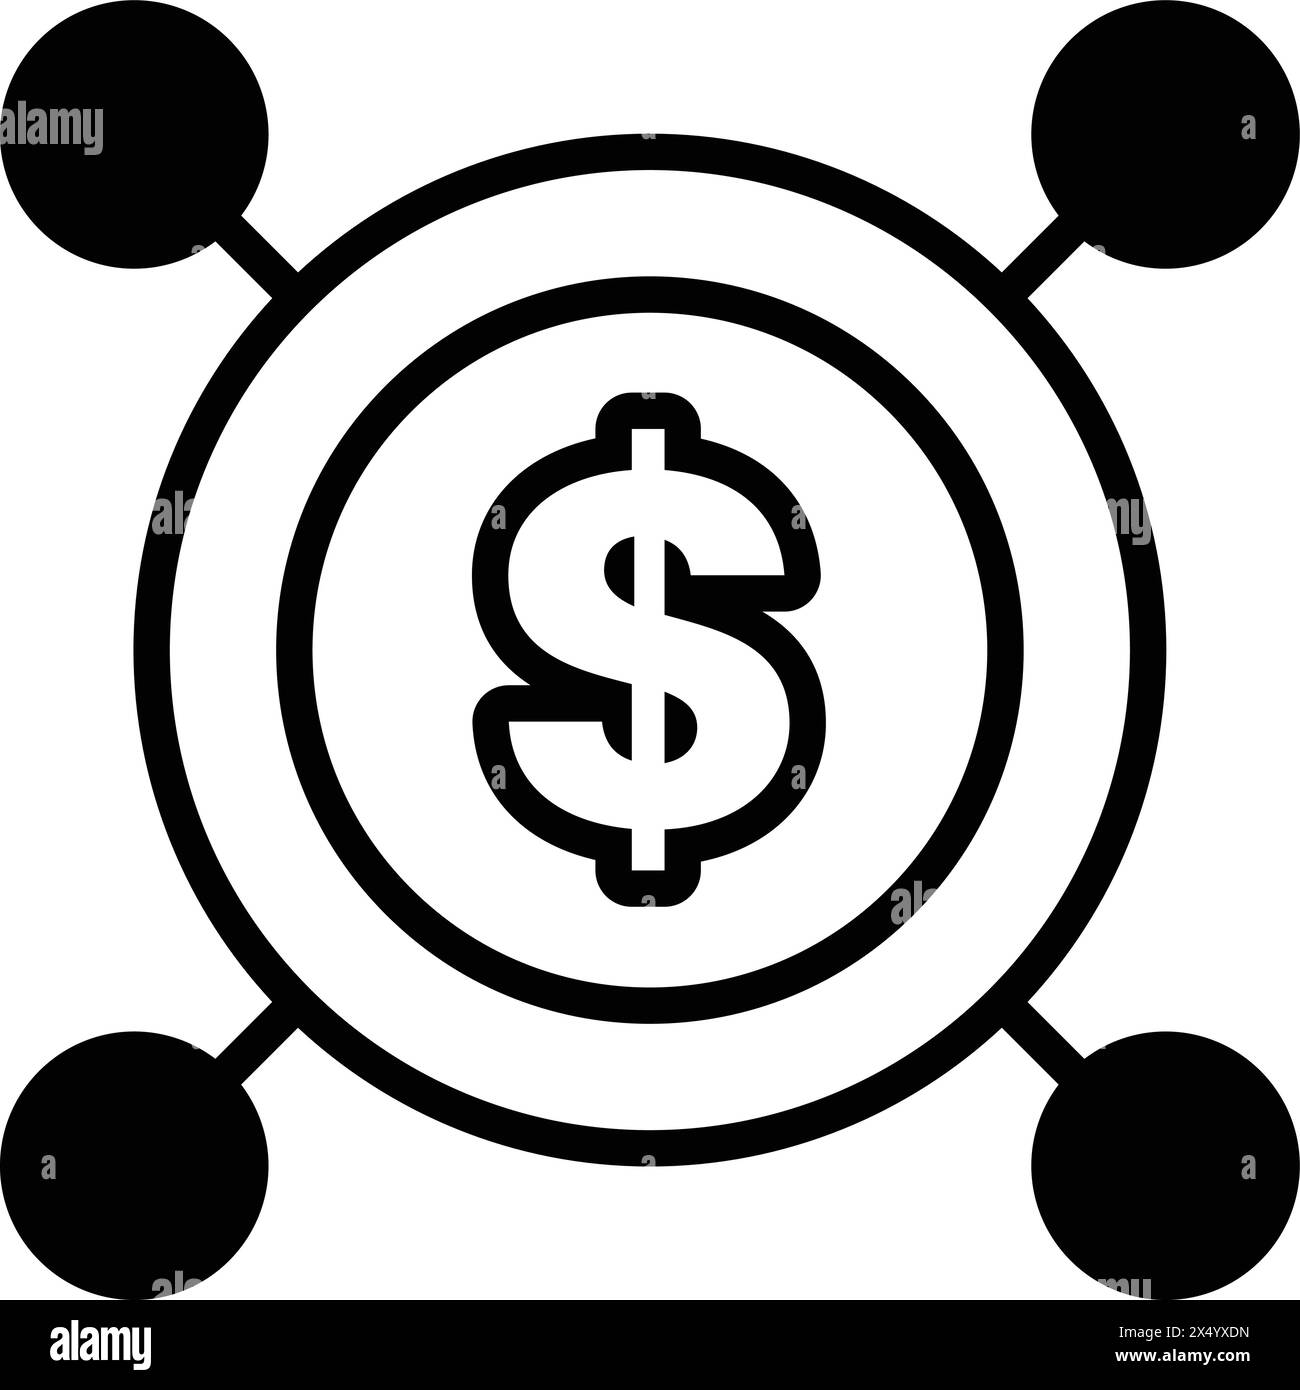 Un'immagine in bianco e nero del simbolo del dollaro con un cerchio intorno. Il simbolo del dollaro è circondato da una serie di cerchi più piccoli, che potrebbero rappresentare Illustrazione Vettoriale